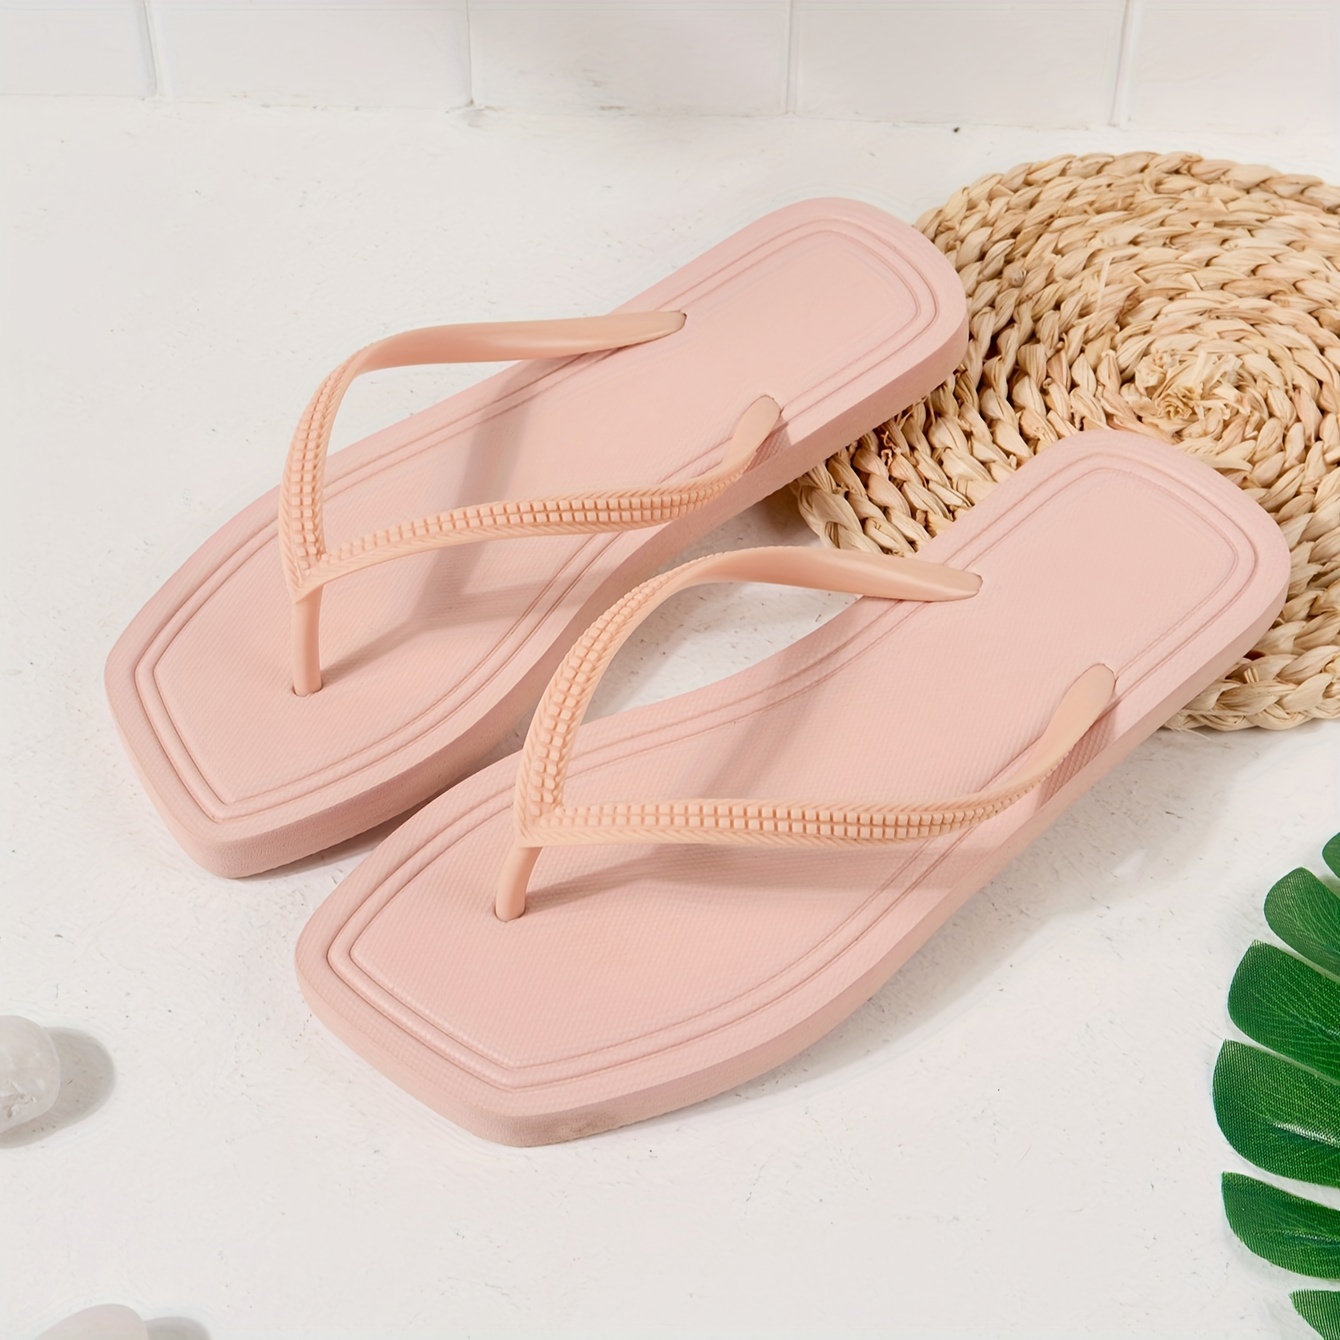 

Women's Flip Flops, Lightweight, Anti-slip, Durable Thong Sandals, Perfect For Outdoor Beach Wear